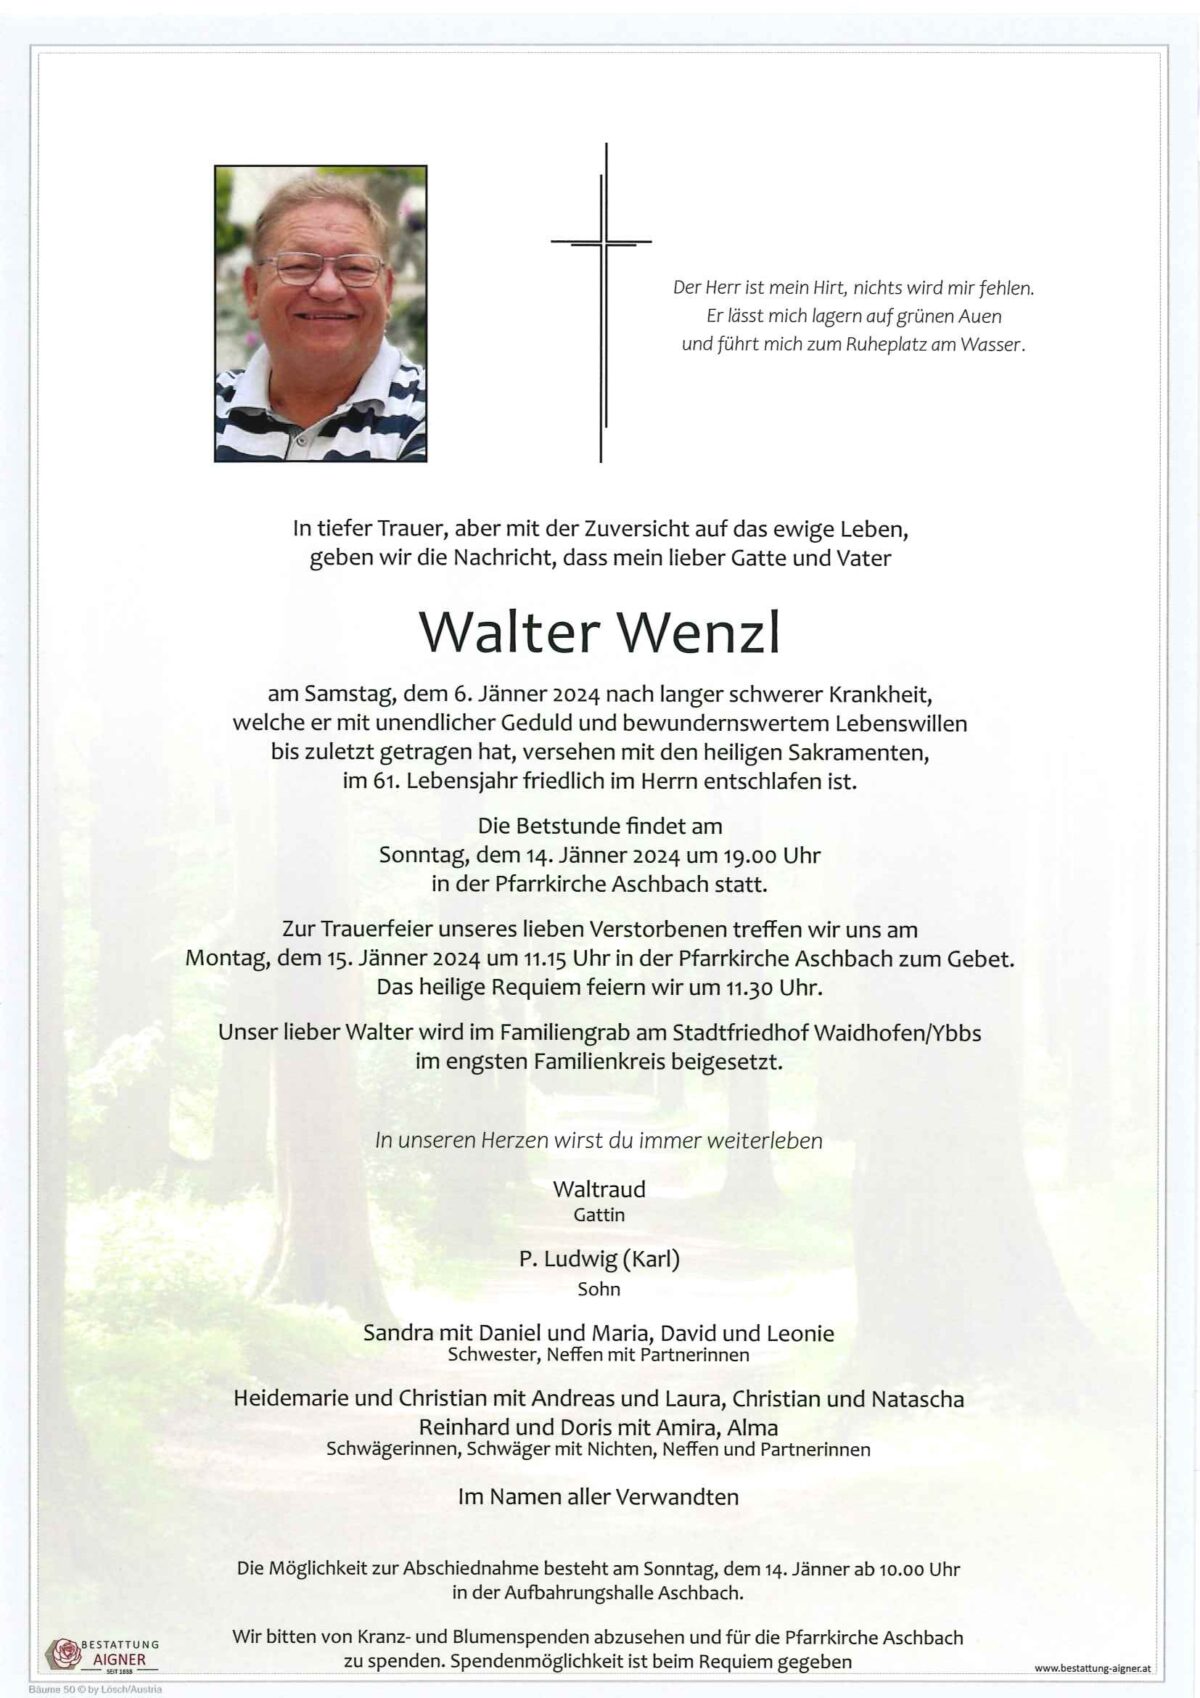 Walter Wenzl